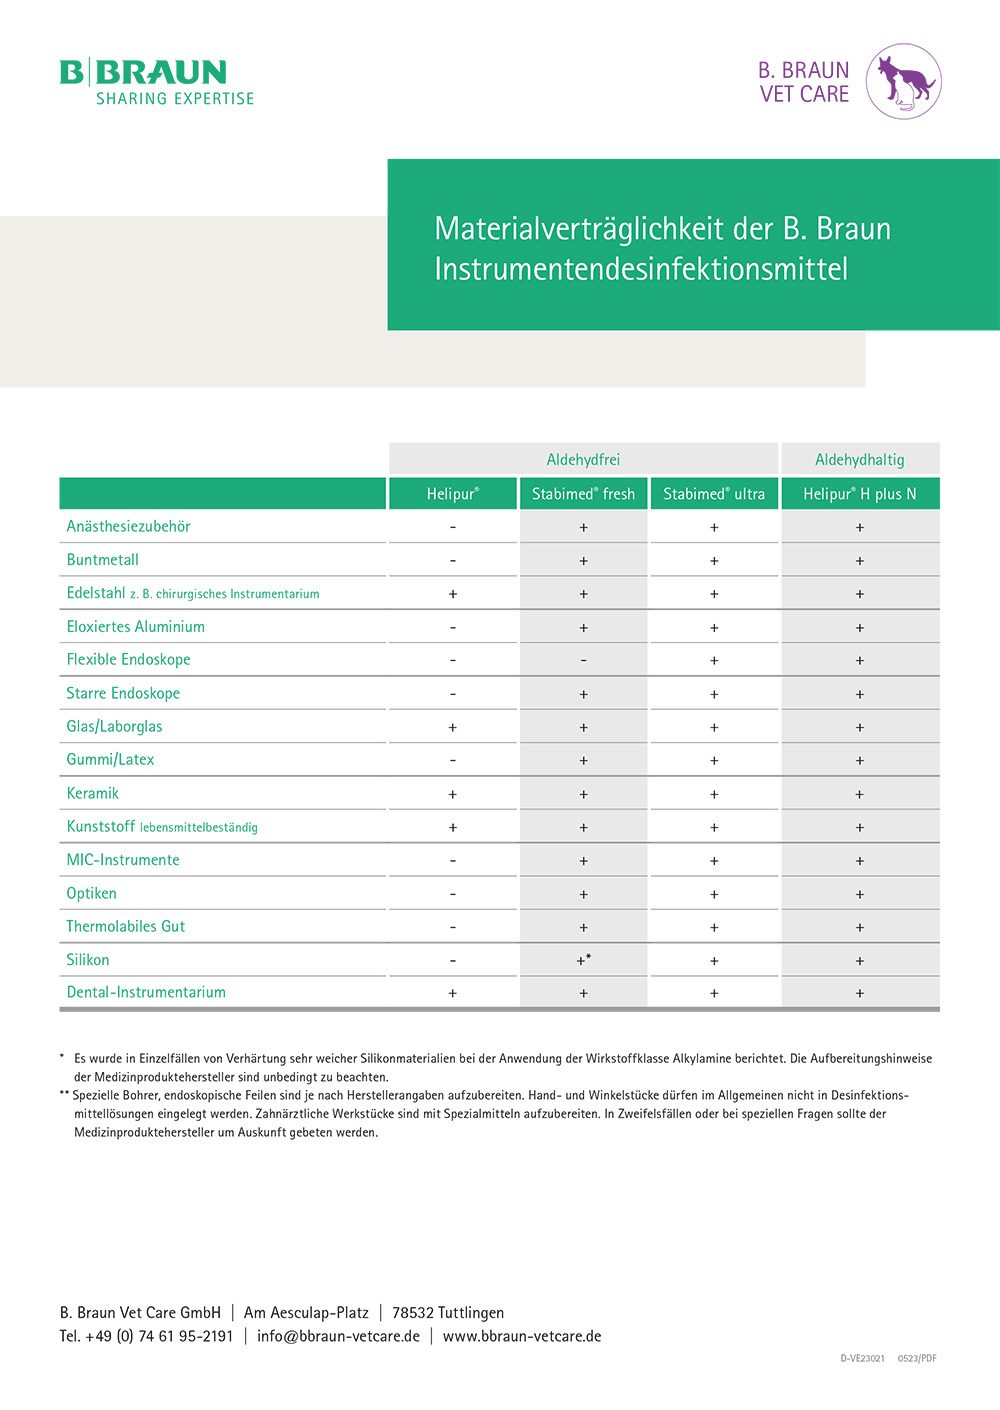 Tabelle: Materialverträglichkeit der B. Braun Instrumentendesinfektionsmittel